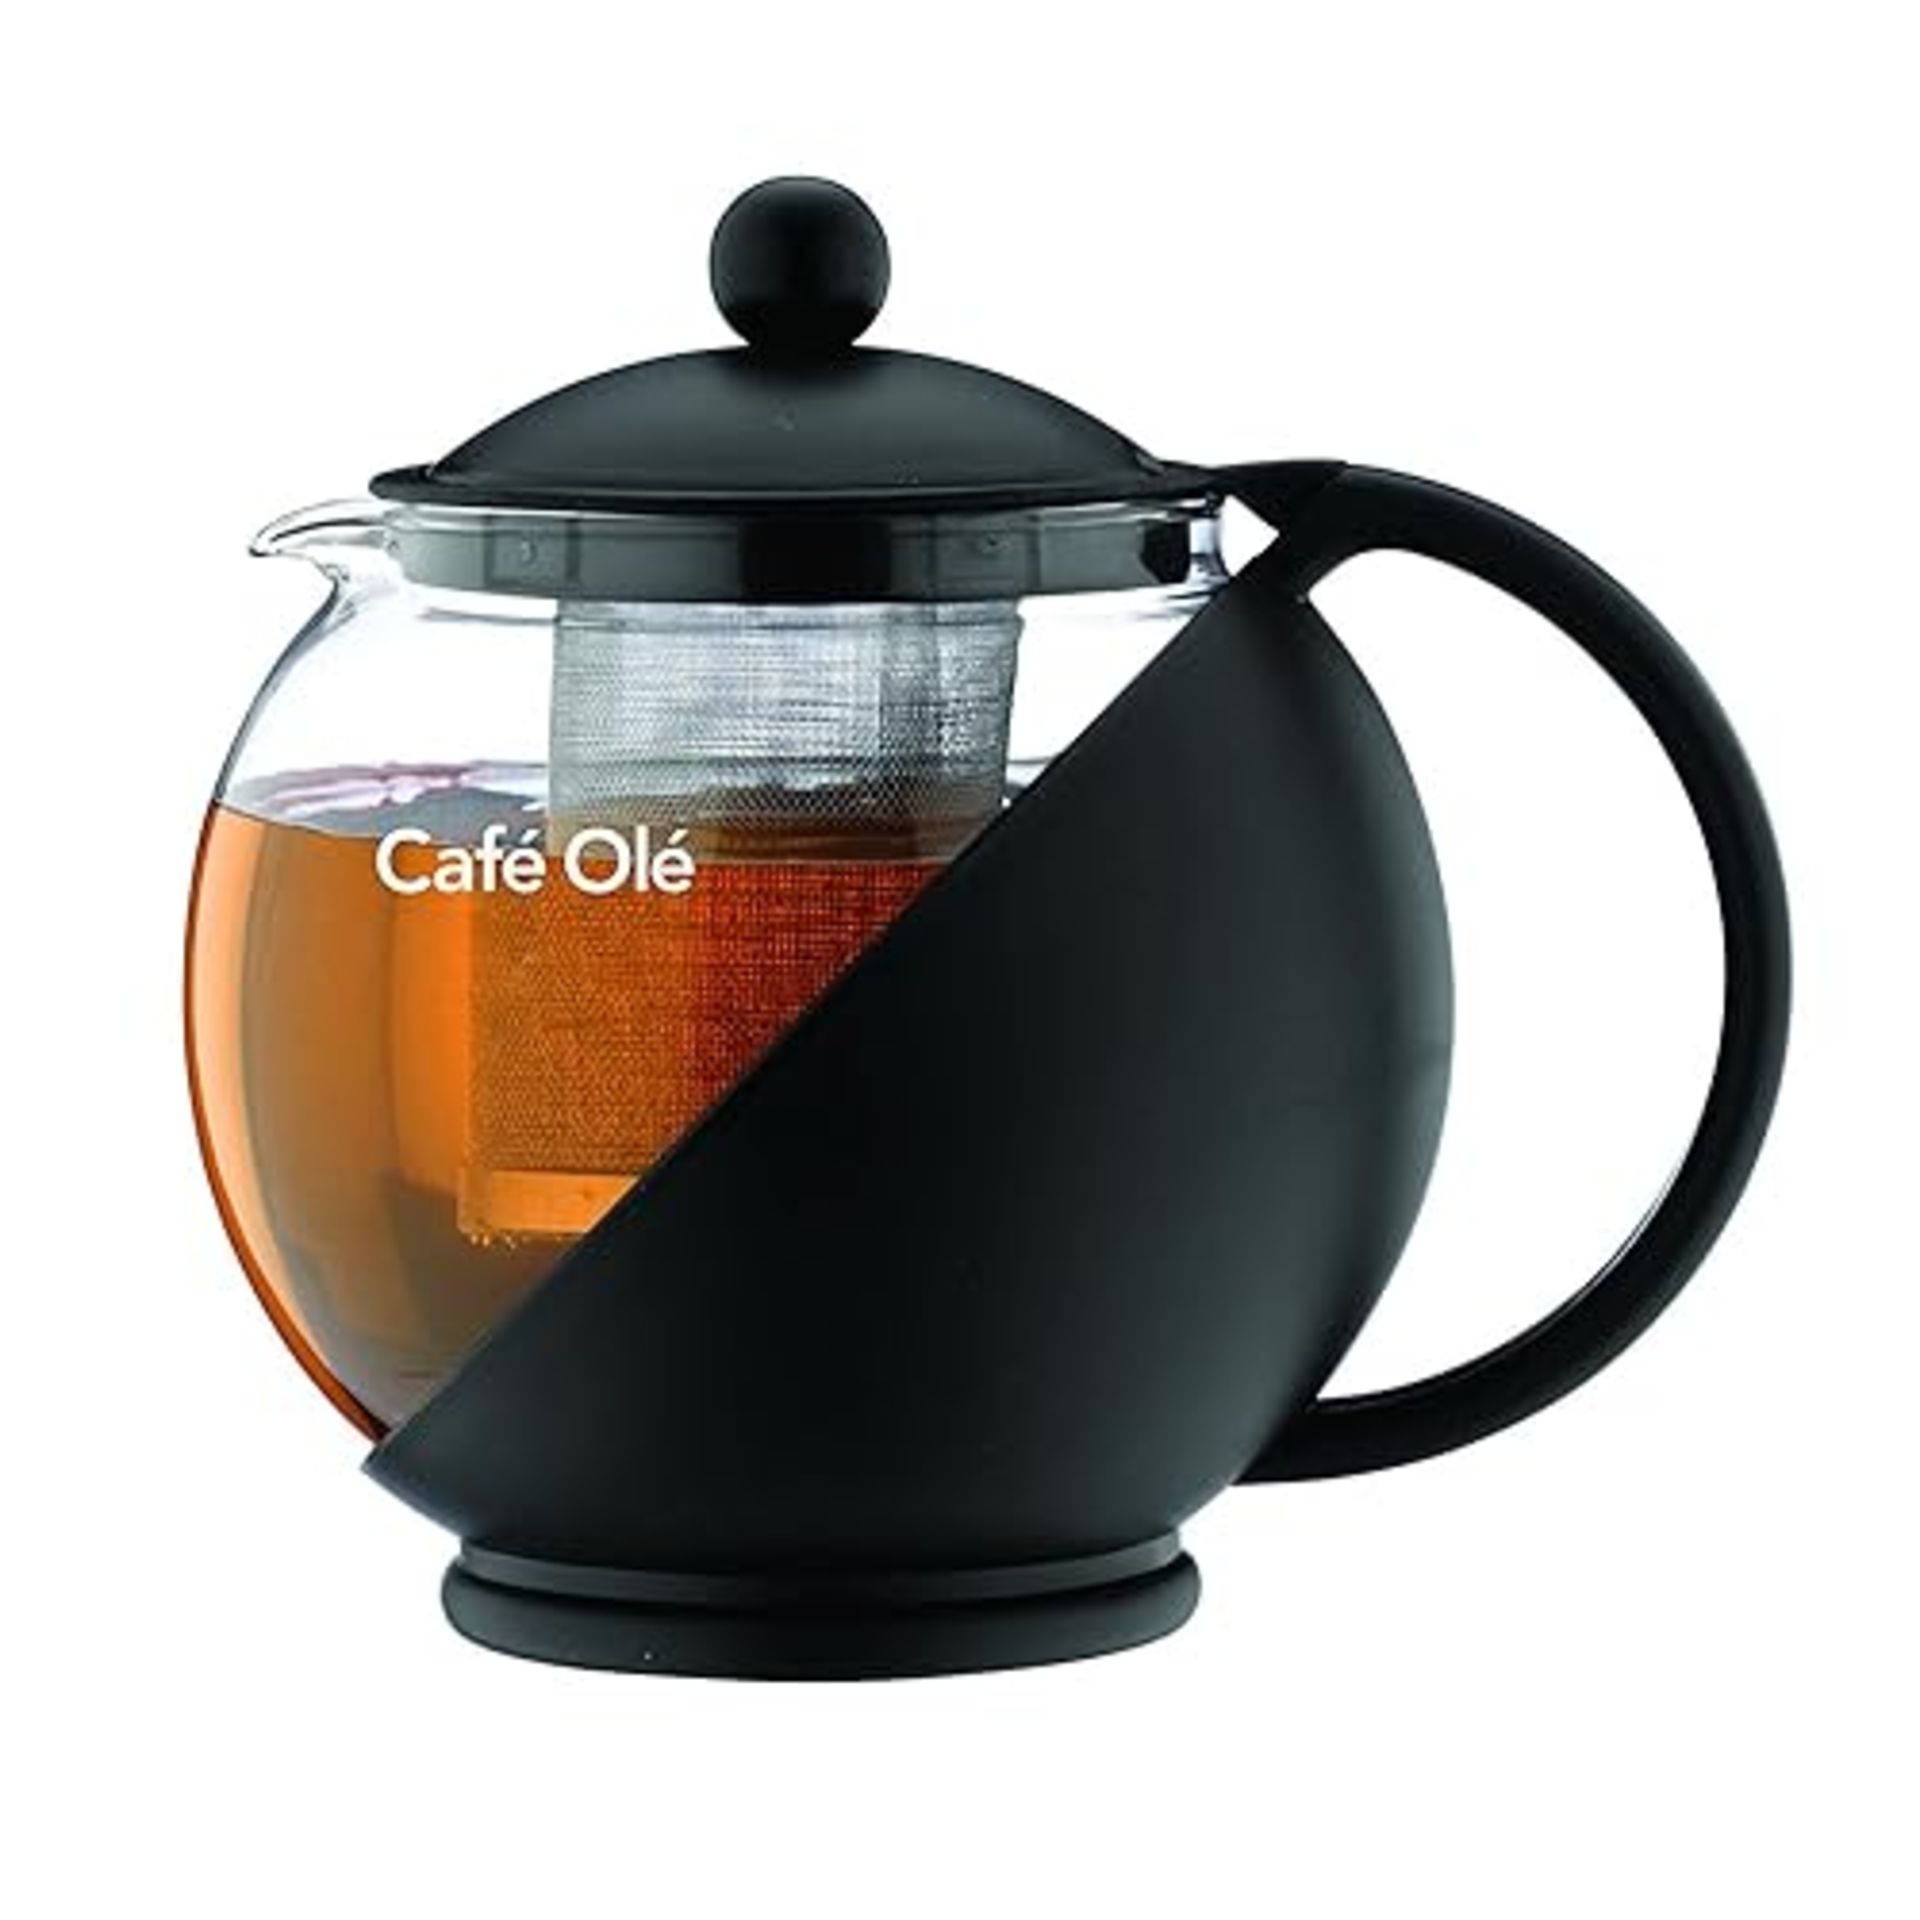 Caf? Ole CMP-07TP Everyday Round Tea Pot Infuser Basket Glass Teapot Loose Leaf 700 ml/24 oz, Blac